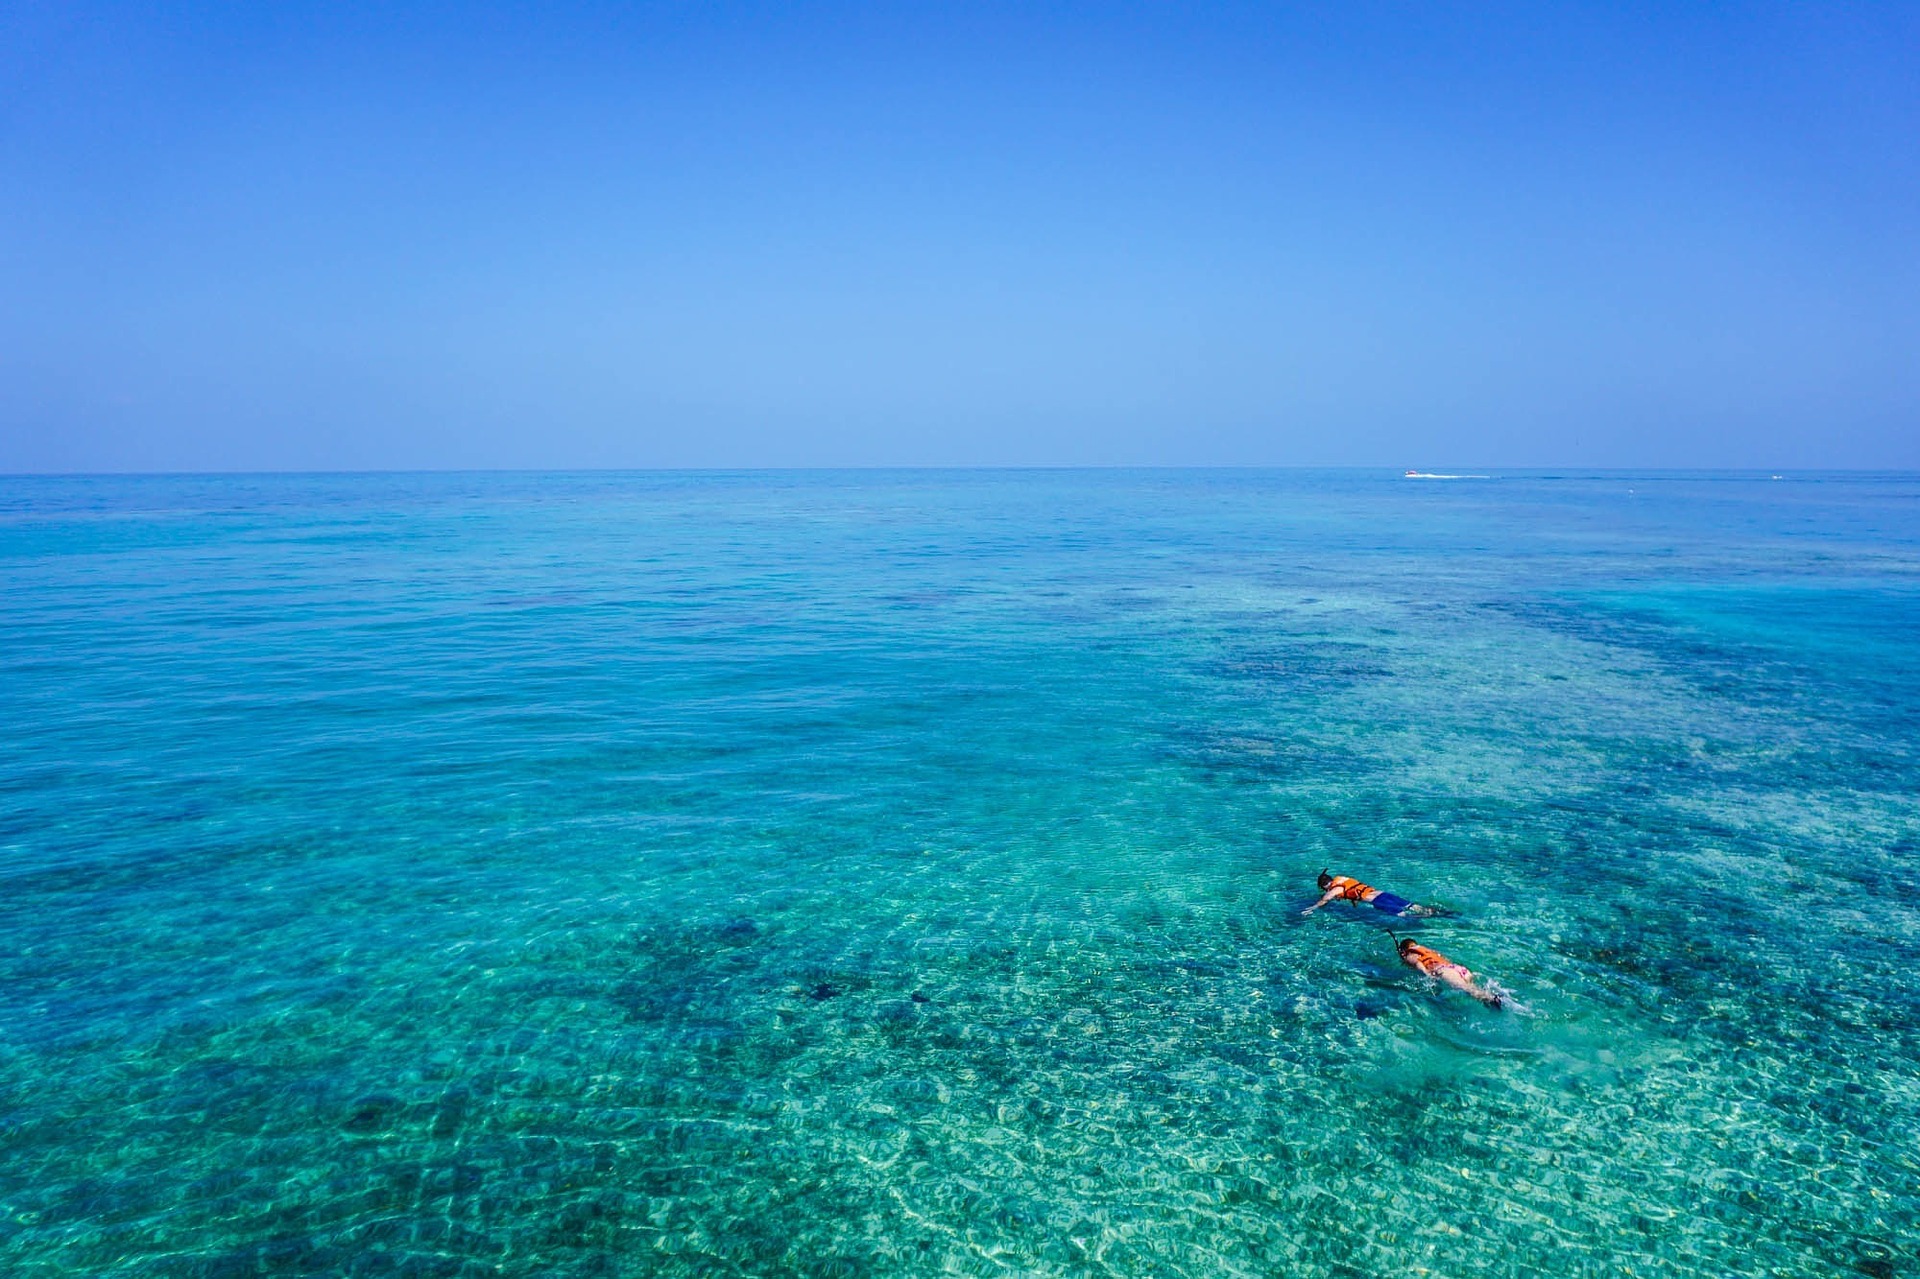 Dos personas disfrutan de su viaje por la India realizando buceo de superficie. Se ve un mar cristalino y a dos personas buceando en la superficie